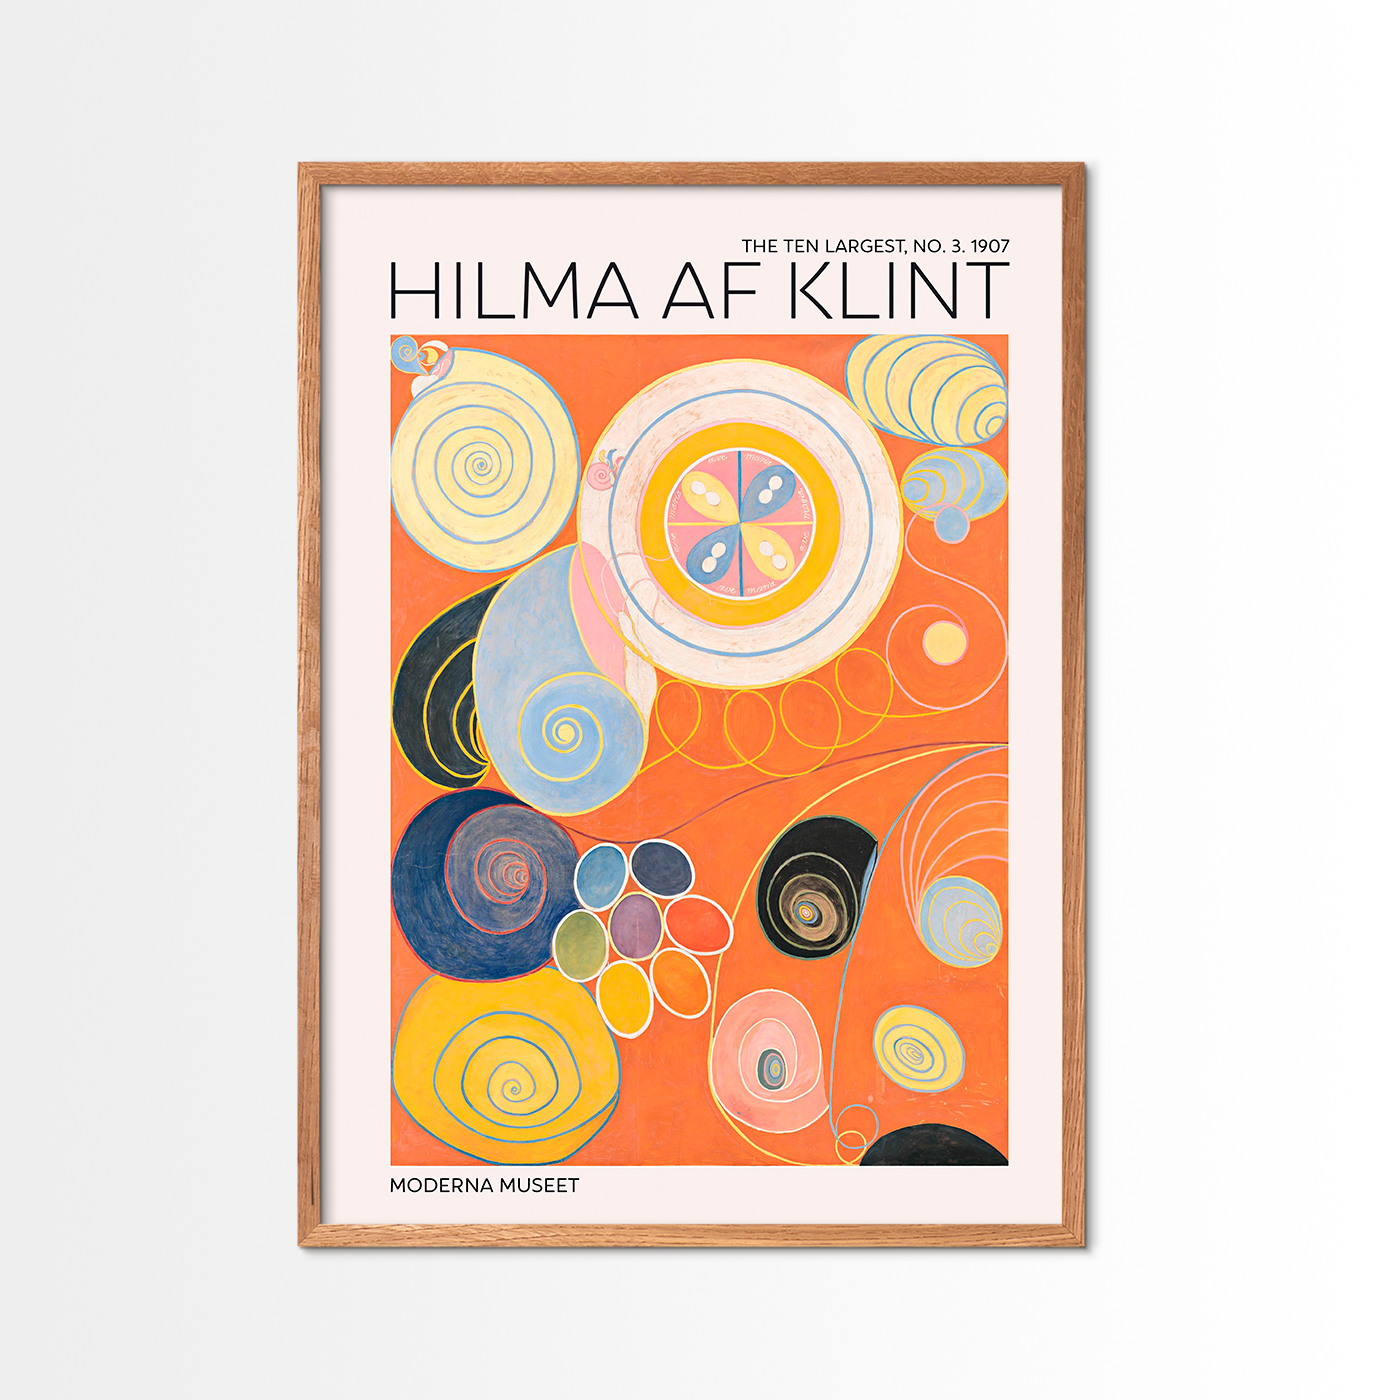 The Ten Largest No. 3 - Hilma Af Klint